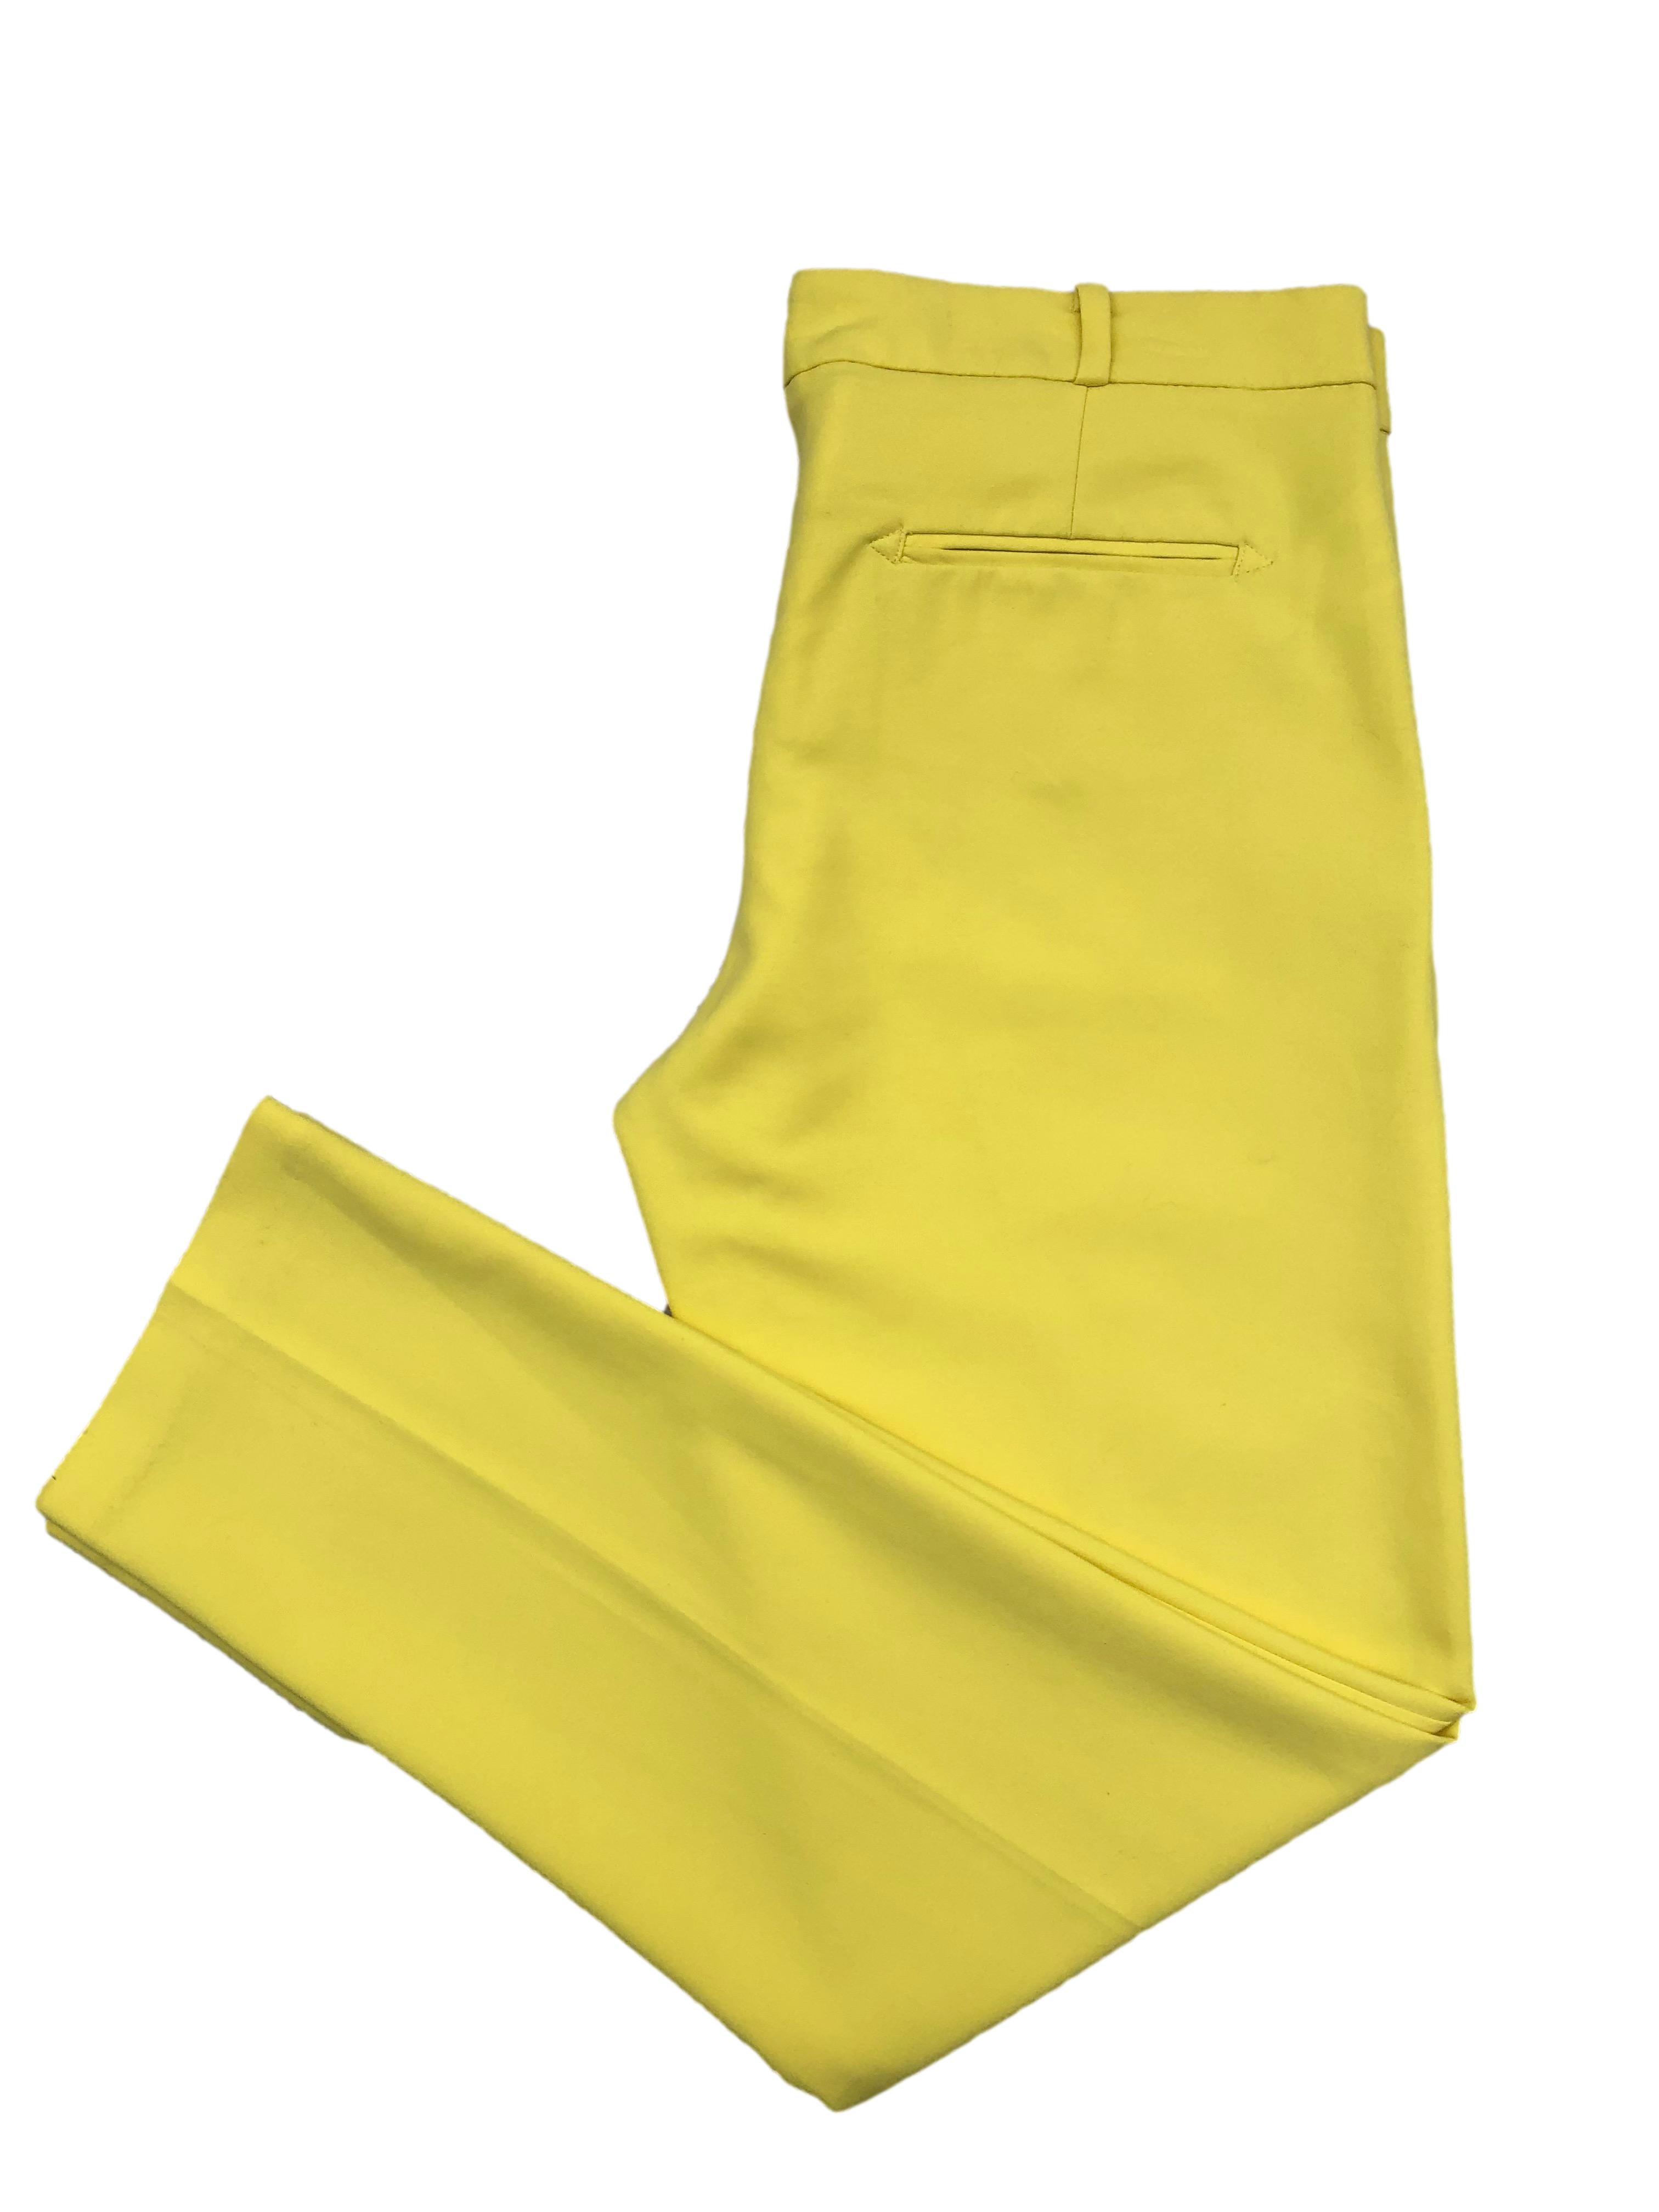 Pantalón de vestir Mango amarillo de corte slim con bolsillos frontales y bolsillos decorativos posteriores. Cintura 82cm, Tiro 21cm, Largo 90cm.